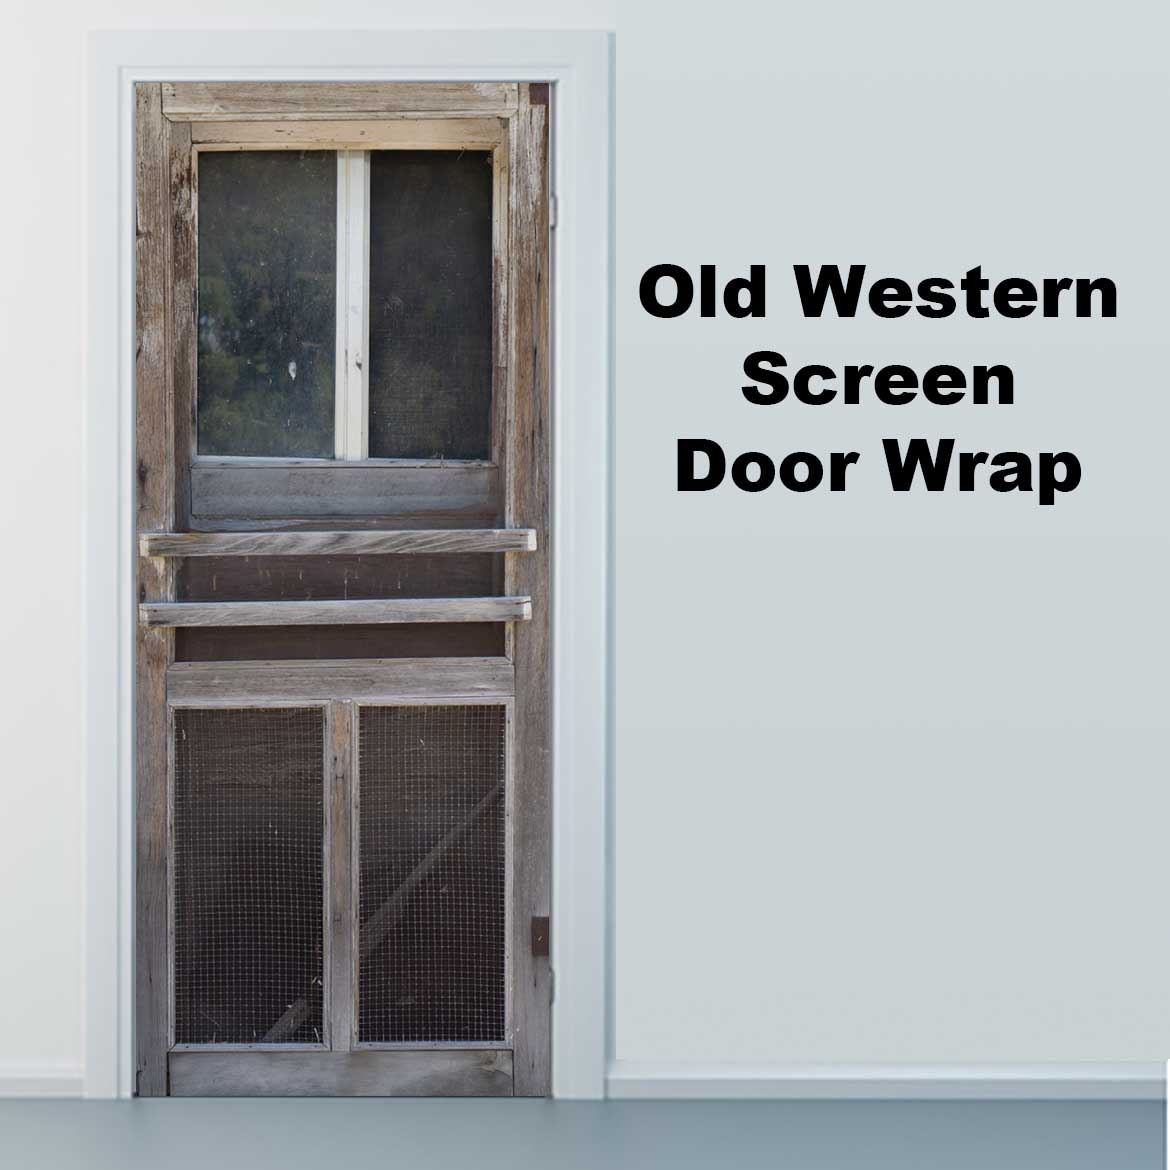 Old Western Screen Door Wrap